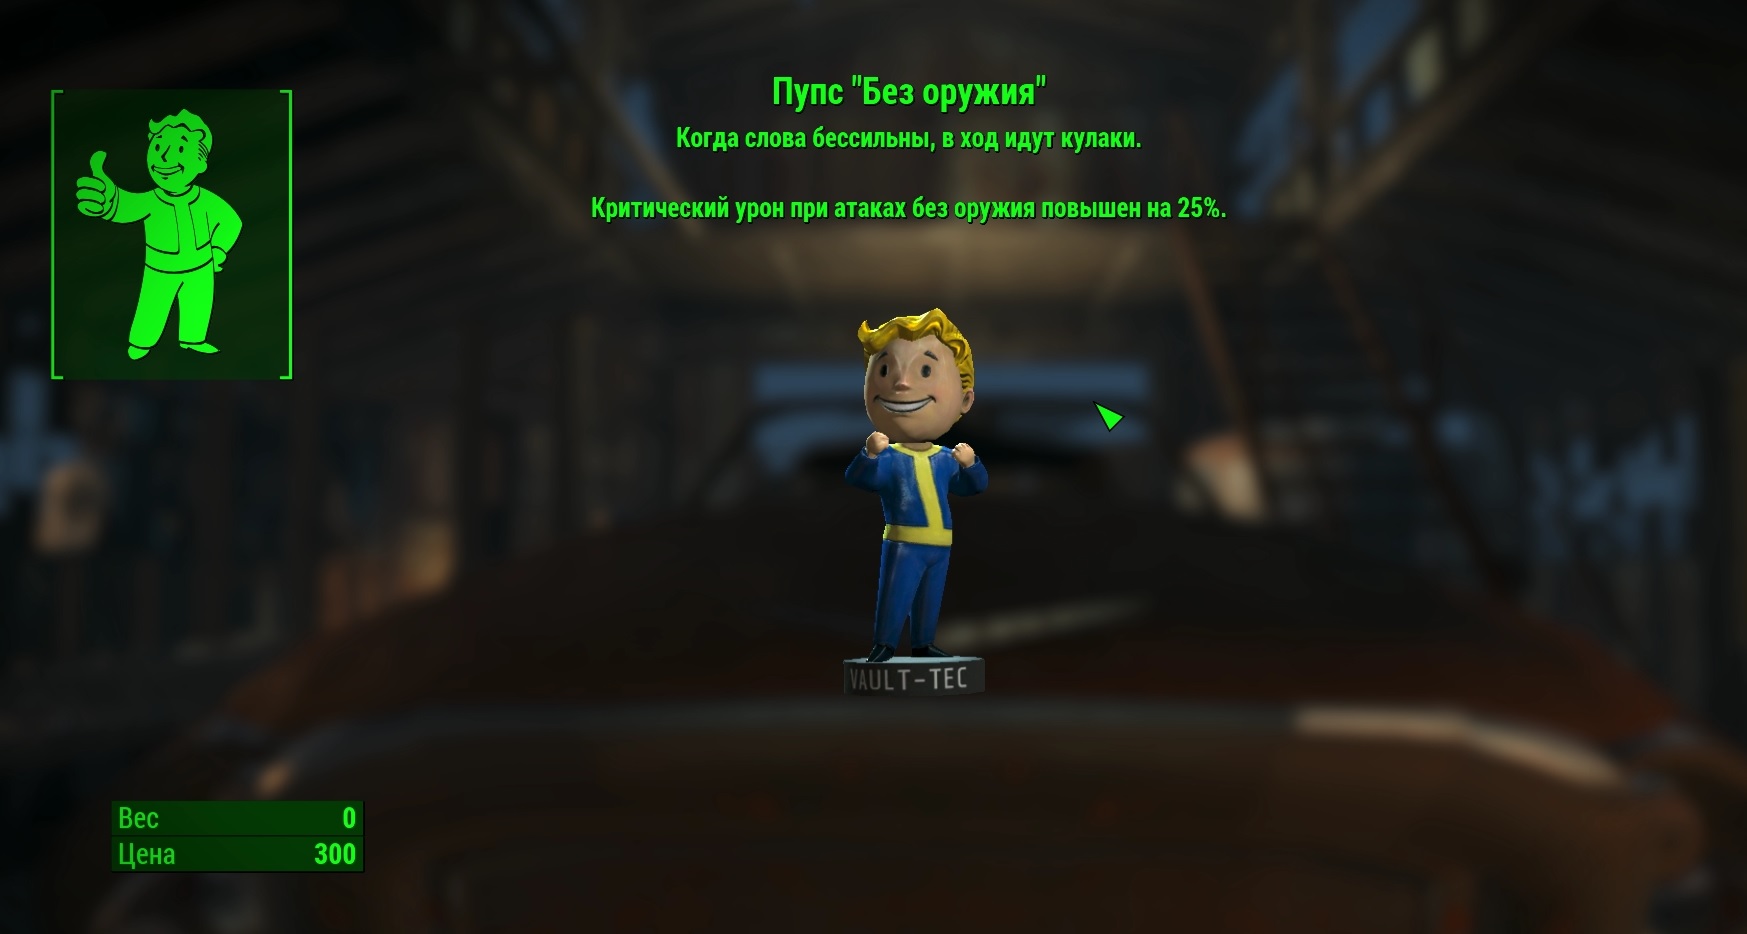 Fallout 4 - Пупс "Без оружия"